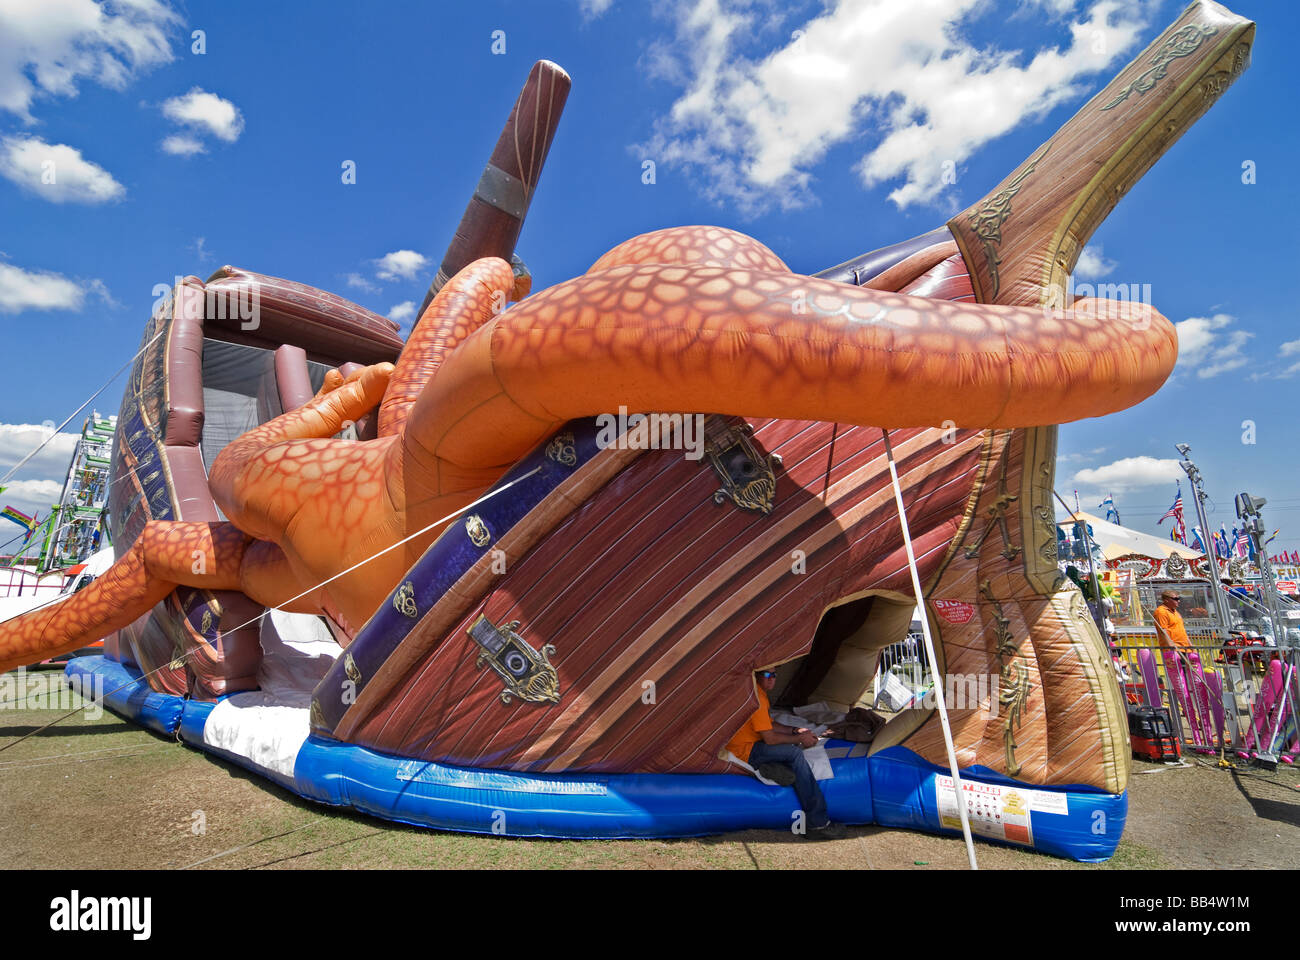 Plante annuelle Strawberry Festival City en Floride à mi-chemin concession pieuvre géante gonflable bateau Banque D'Images